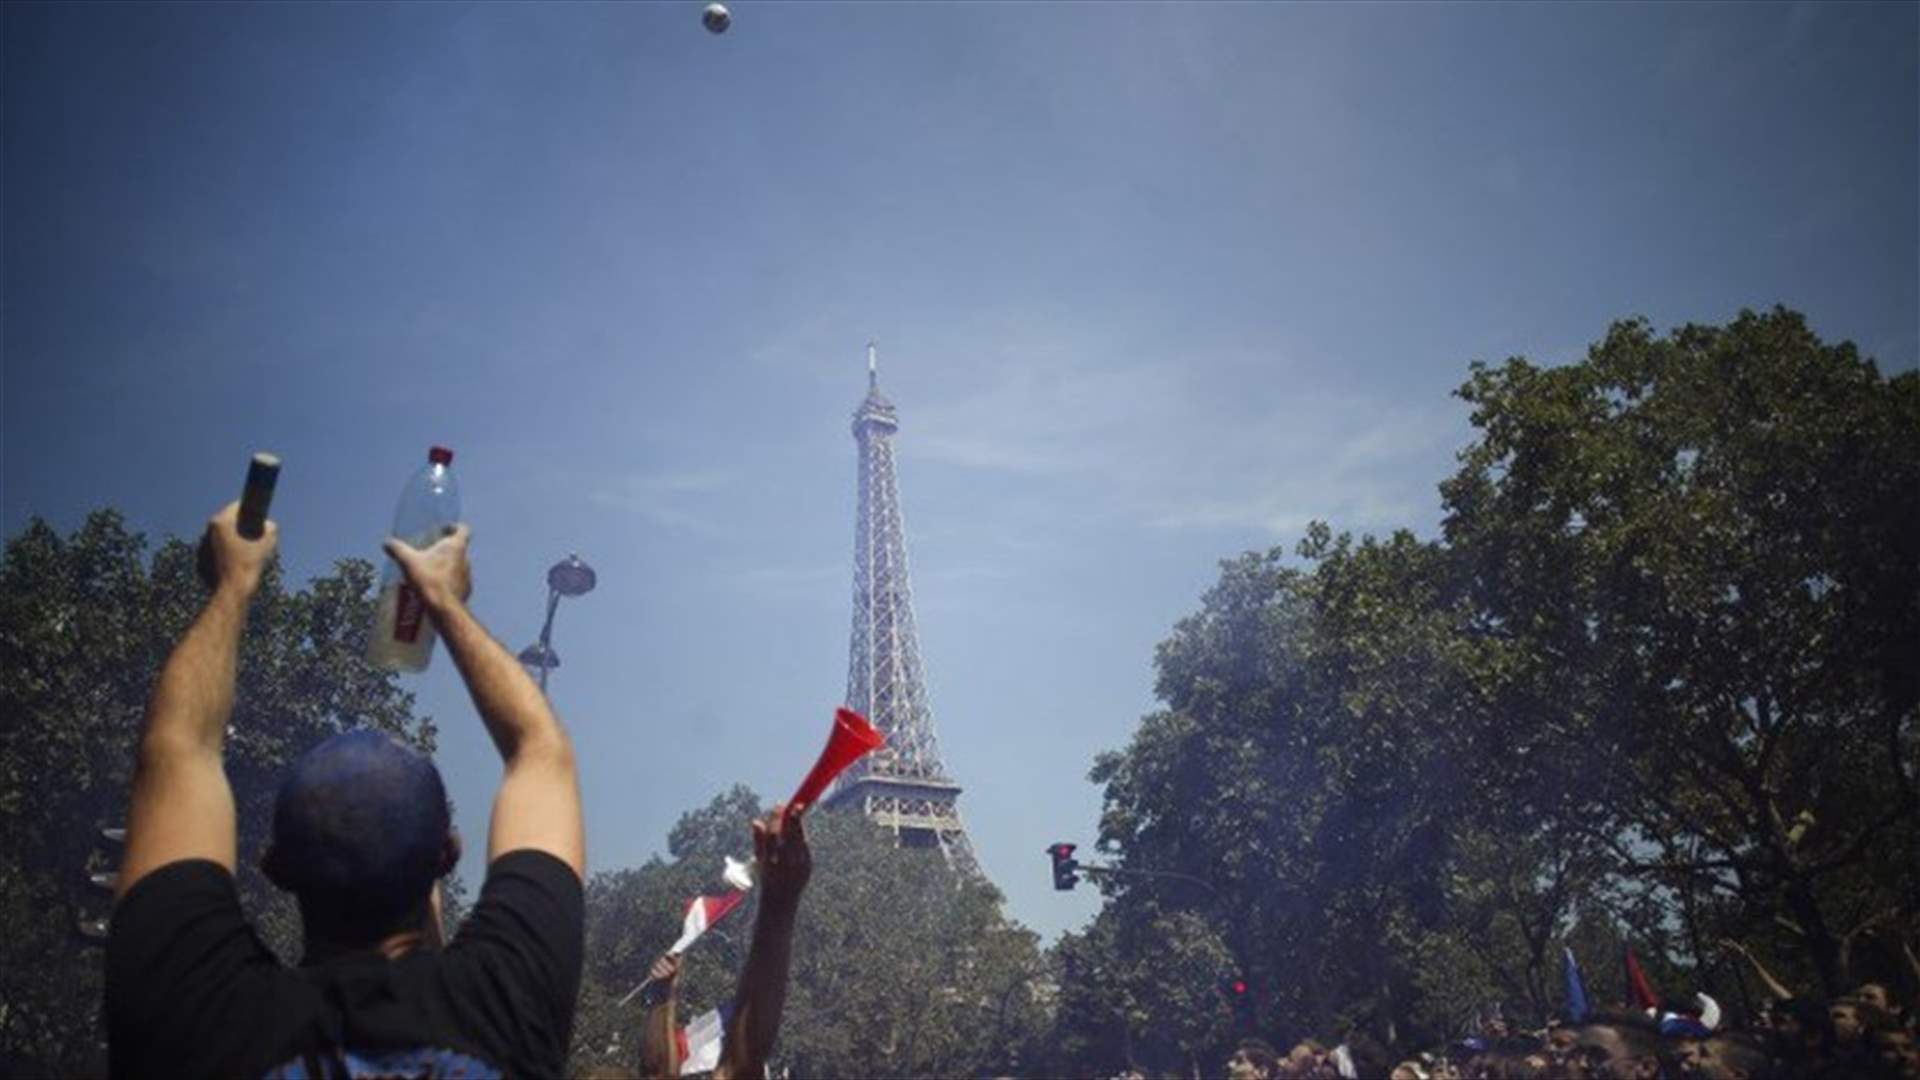 بالصور - احتفالات صاخبة للفرنسيين في باريس !